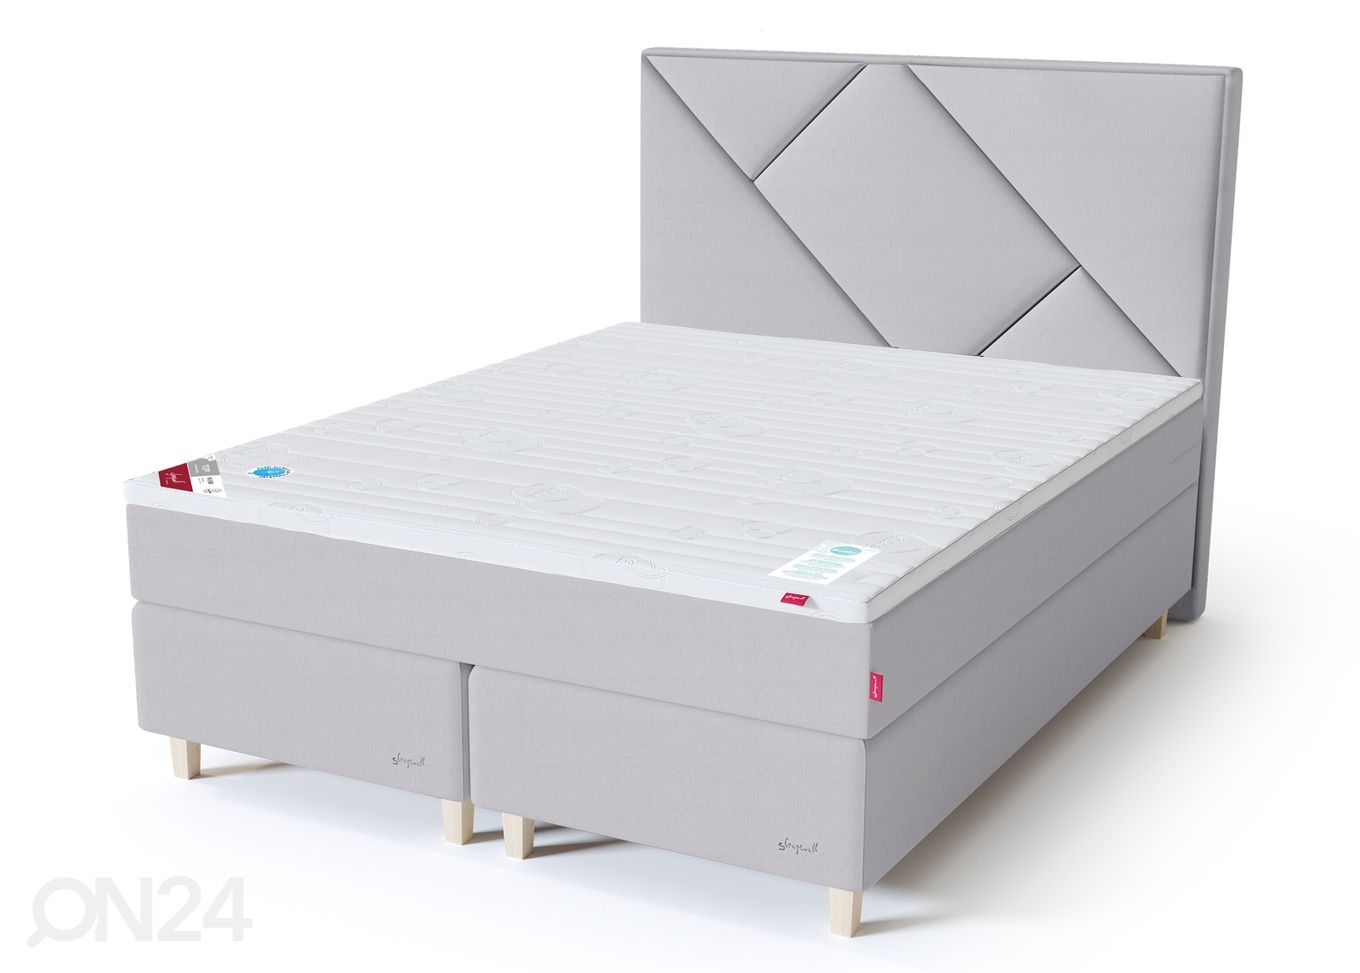 Sleepwell Red континентальная кровать мягкая 180x200 cm увеличить